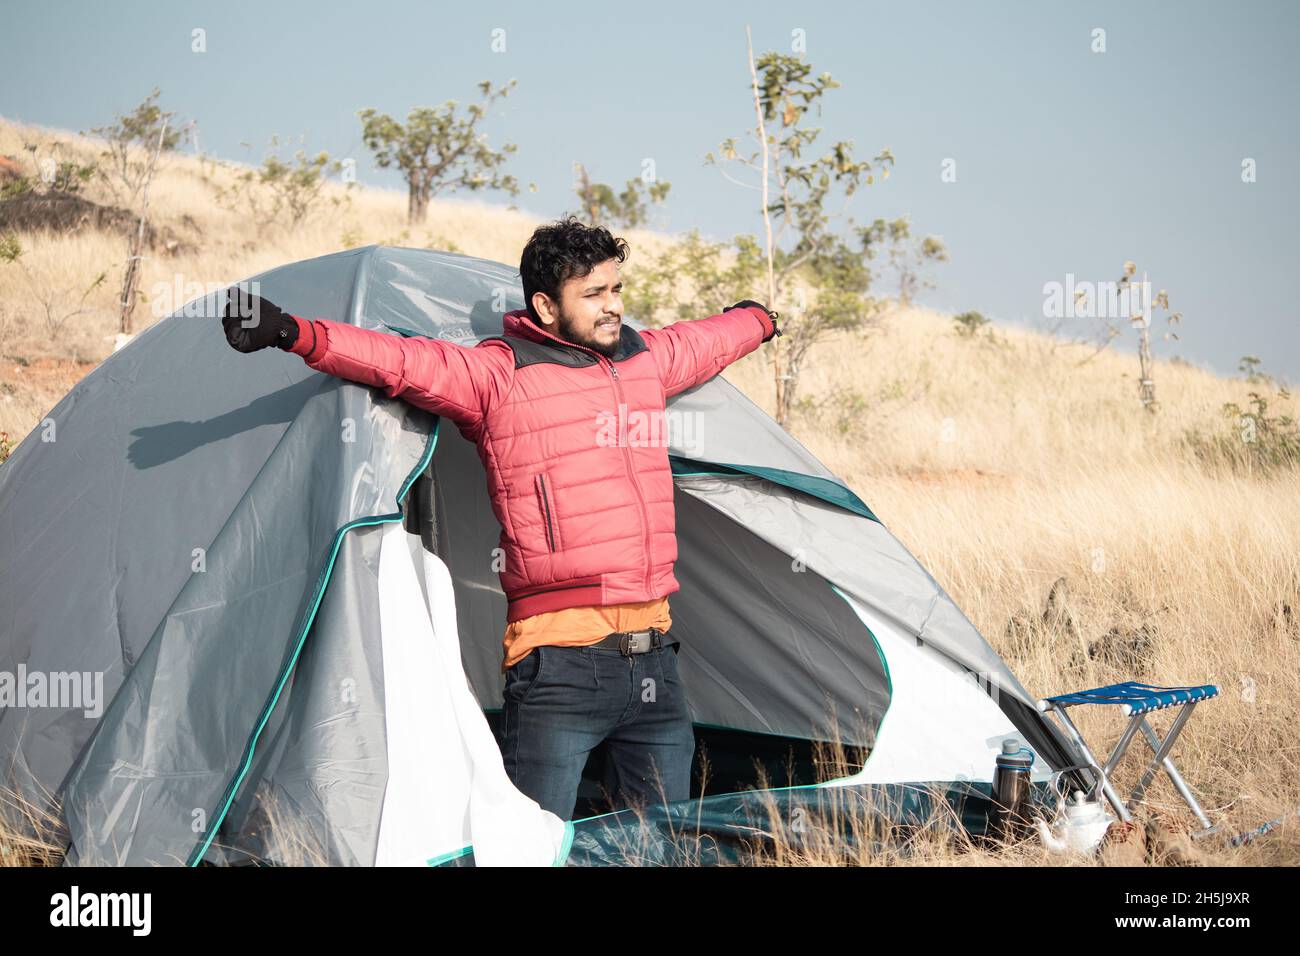 Reisende, die morgens aus dem Zelt auf dem Berg aufwachen - Konzept der Alleinreise, Wanderer während der Ferien und im Urlaub Stockfoto